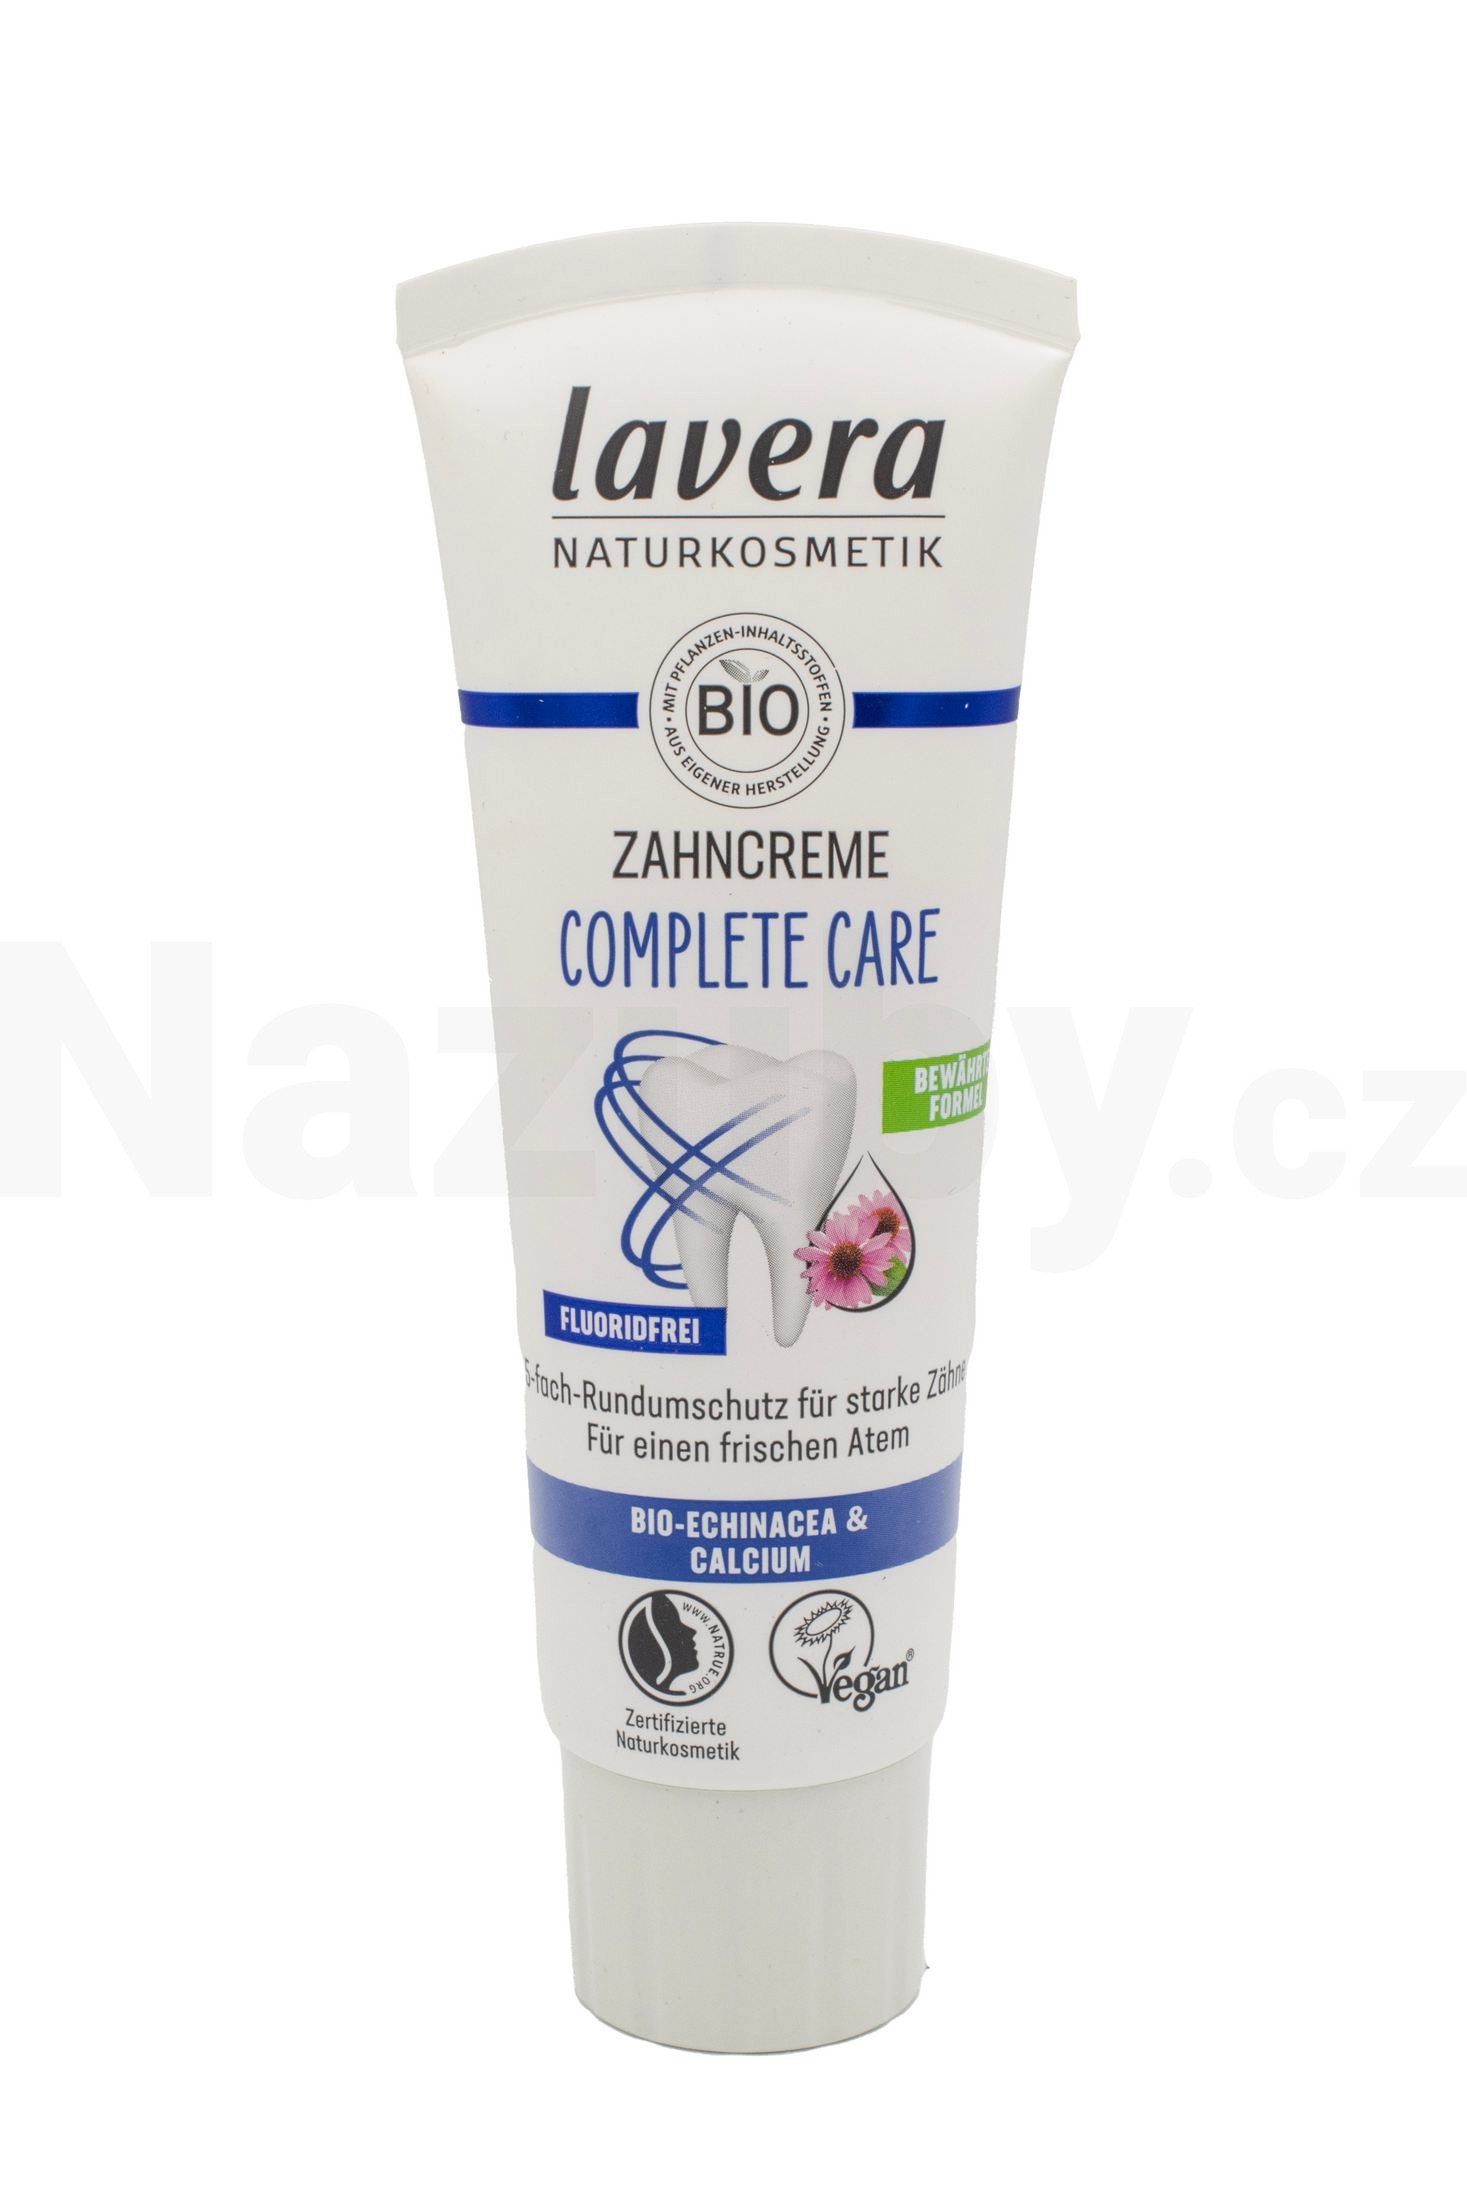 Lavera Complete Care No Fluoride zubní pasta 75 ml